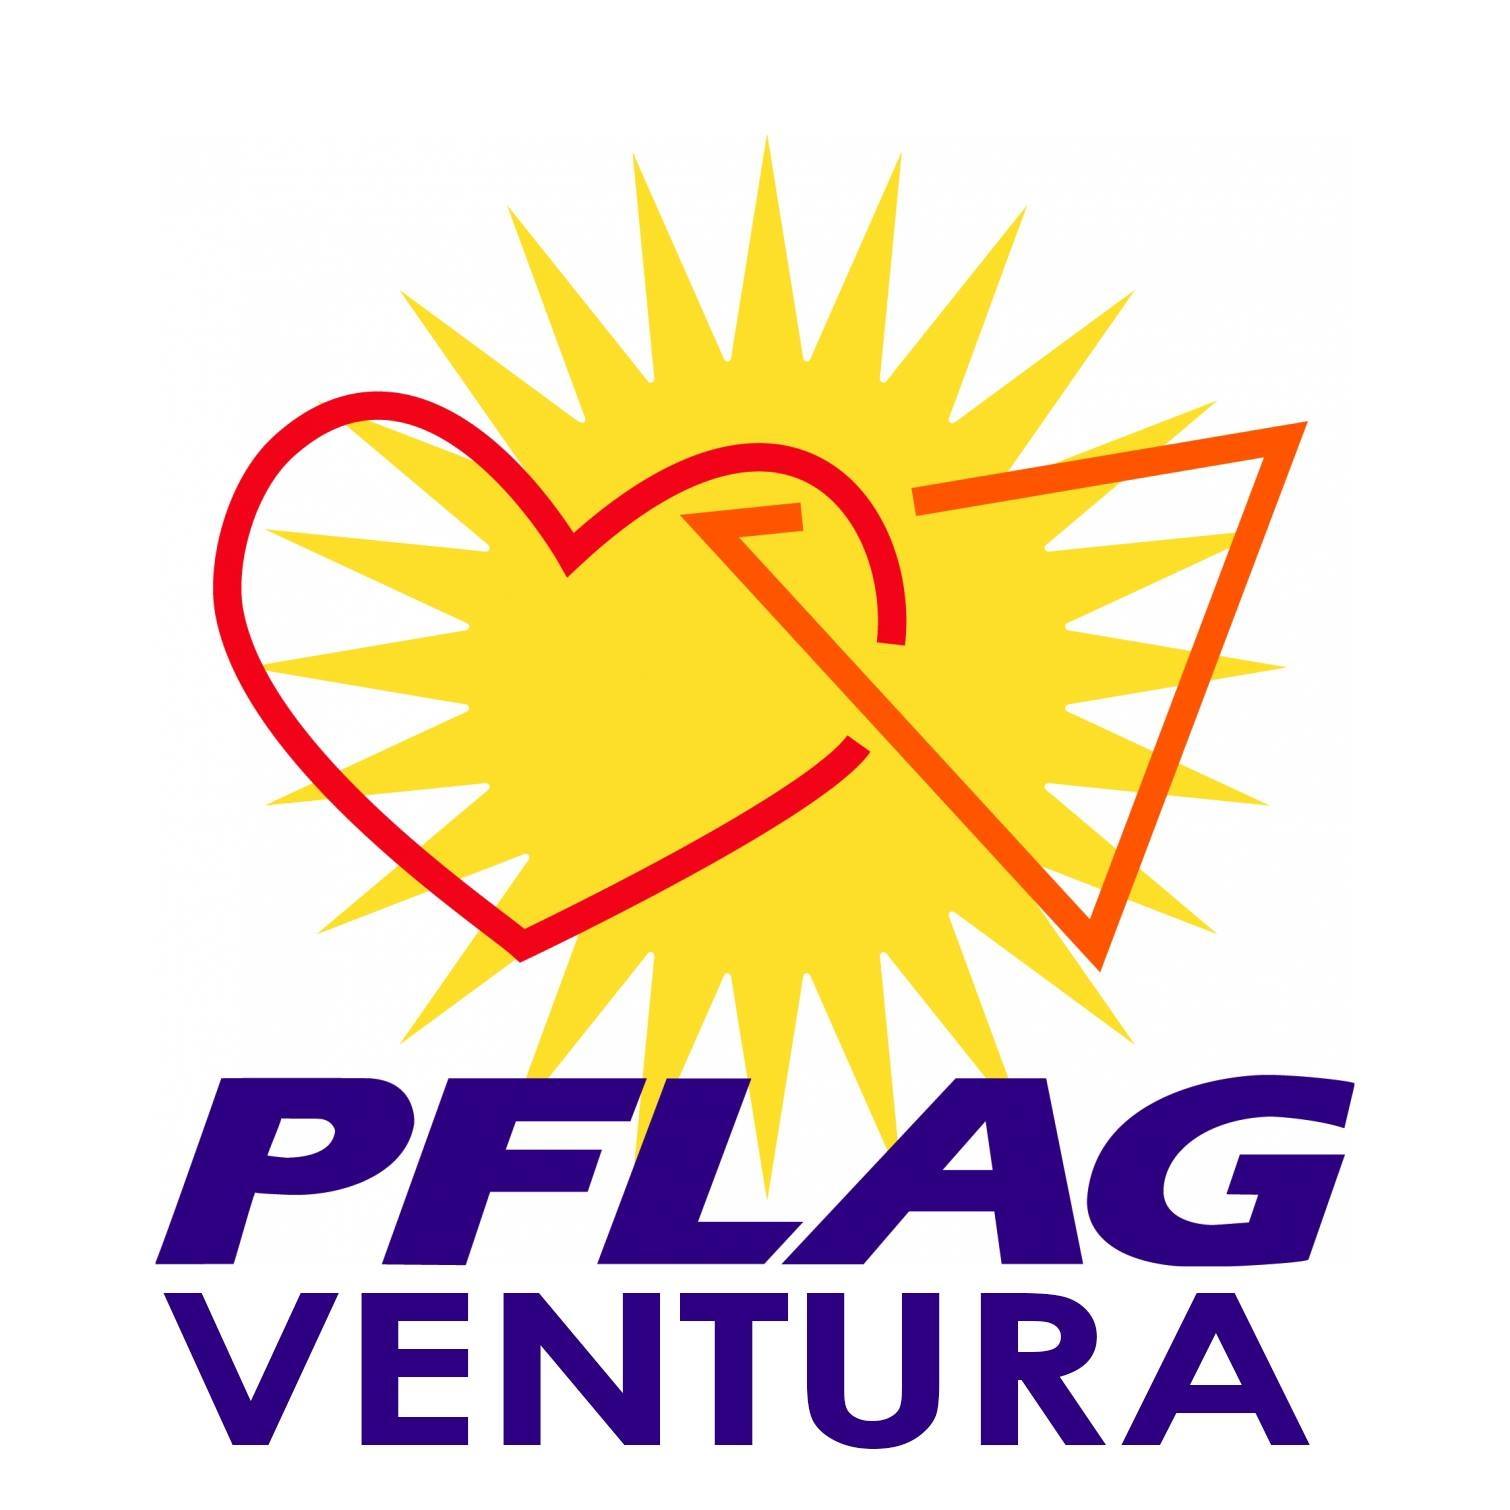 LGBTQ Organization in Sacramento California - PFLAG Ventura